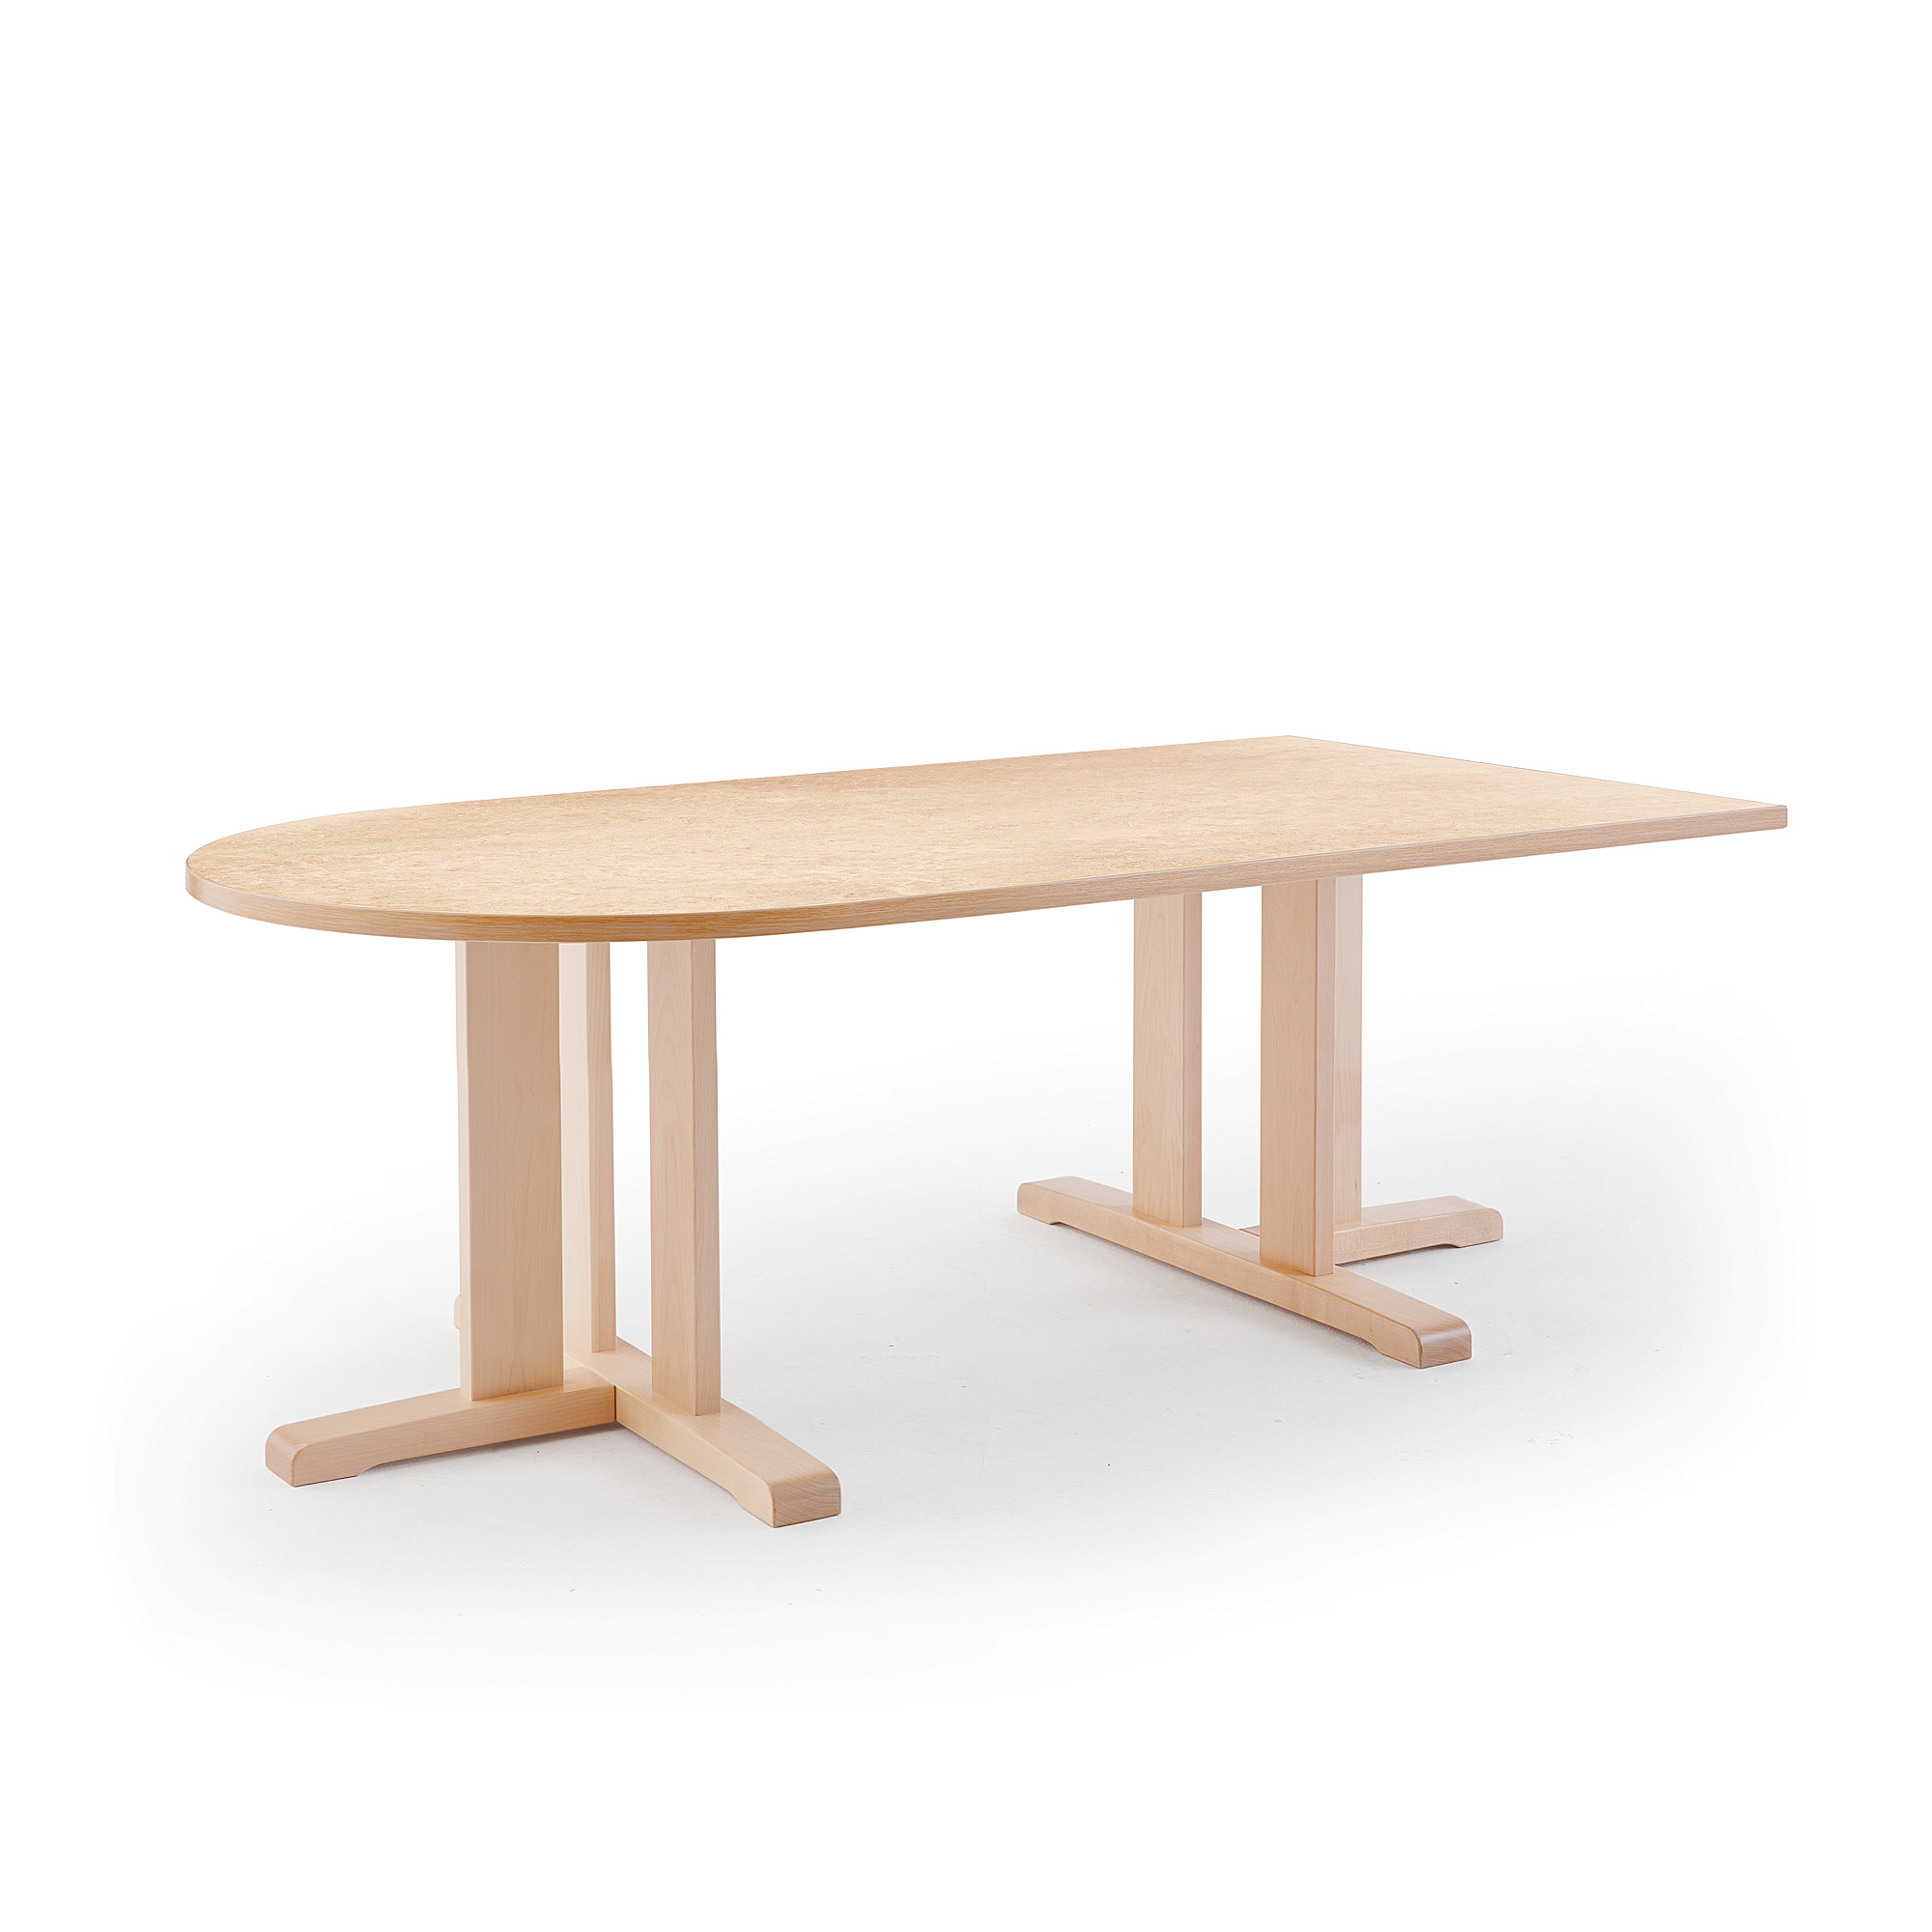 Stůl KUPOL, 1800x800x600 mm, půlovál, akustické linoleum, bříza/béžová